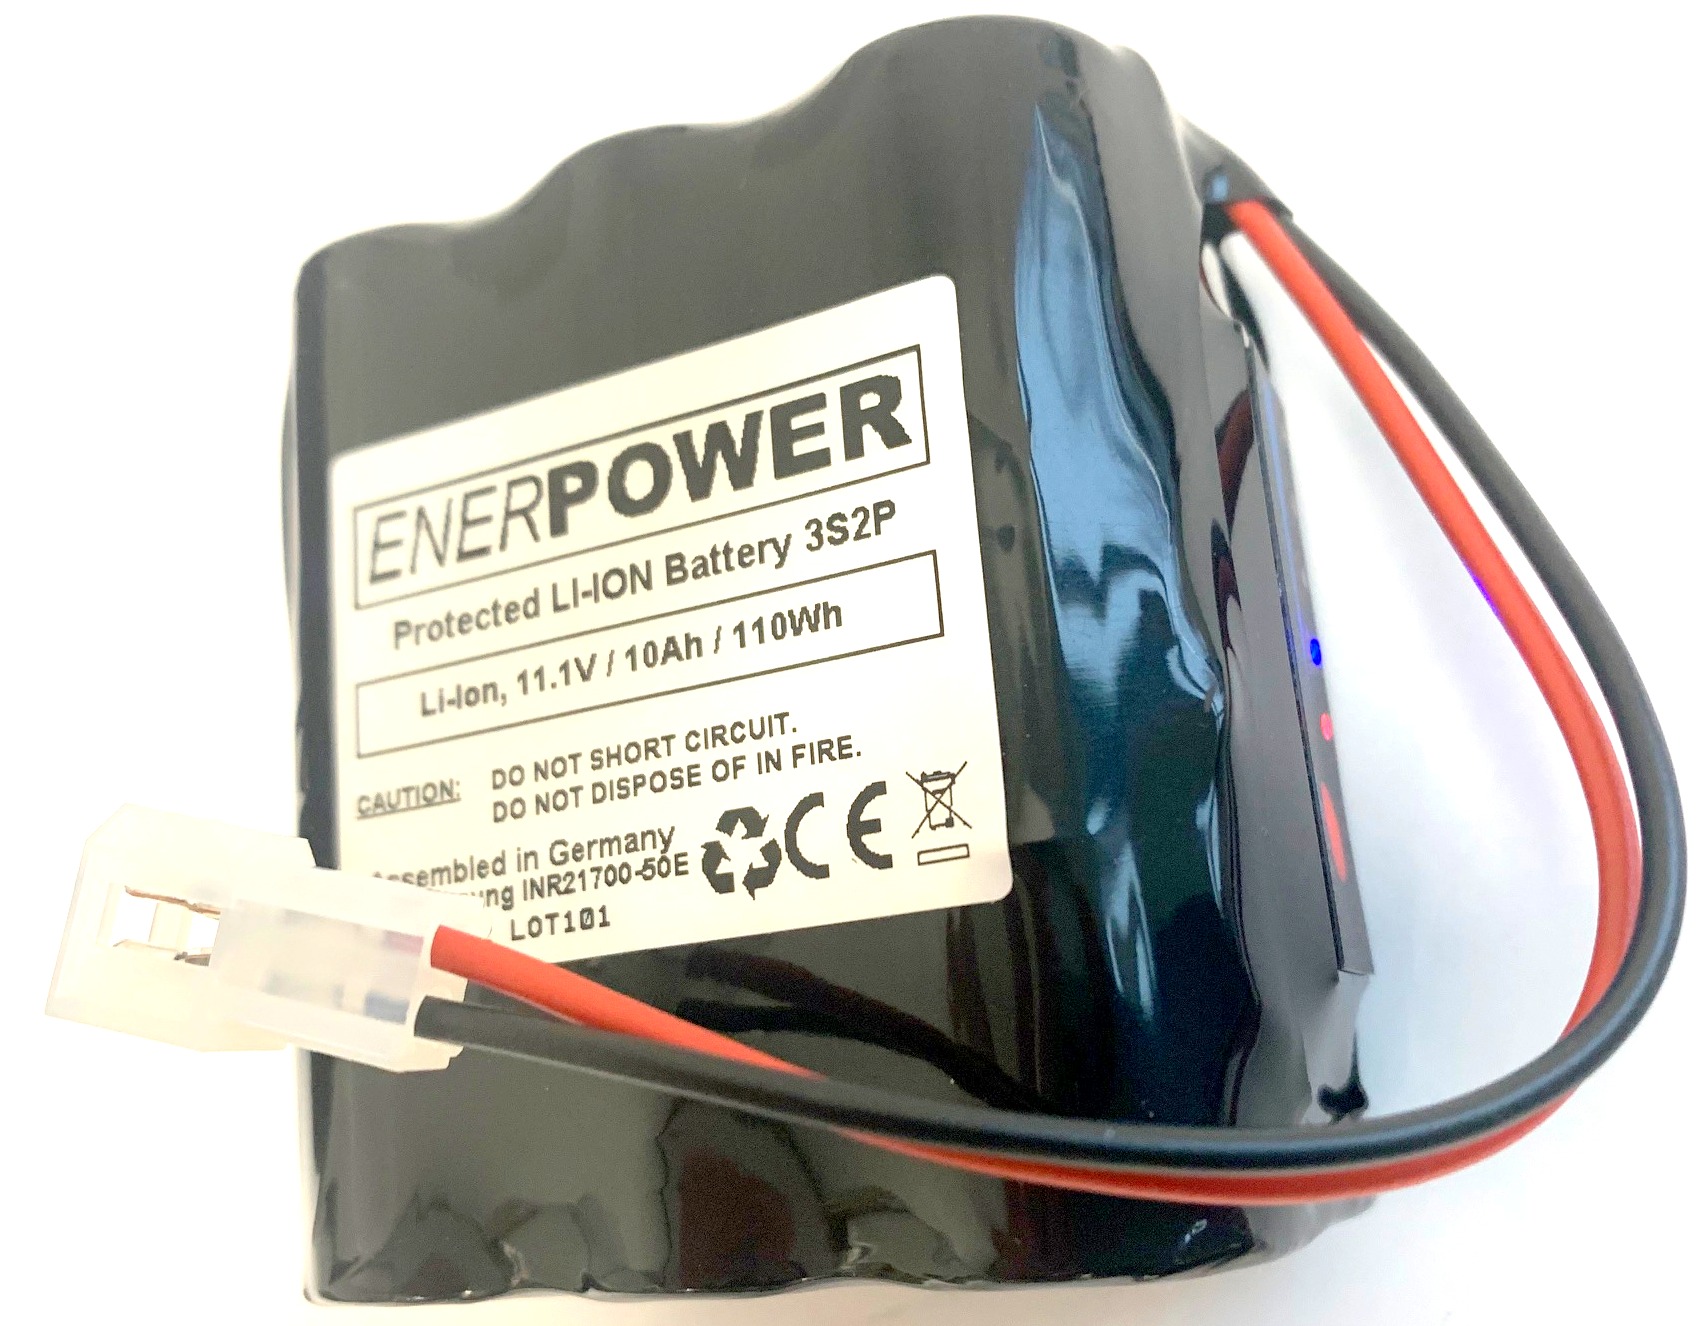 ENERpower Battery 10.8V-11.1V (12V) 10000 mAh with Round Plug (3x2)